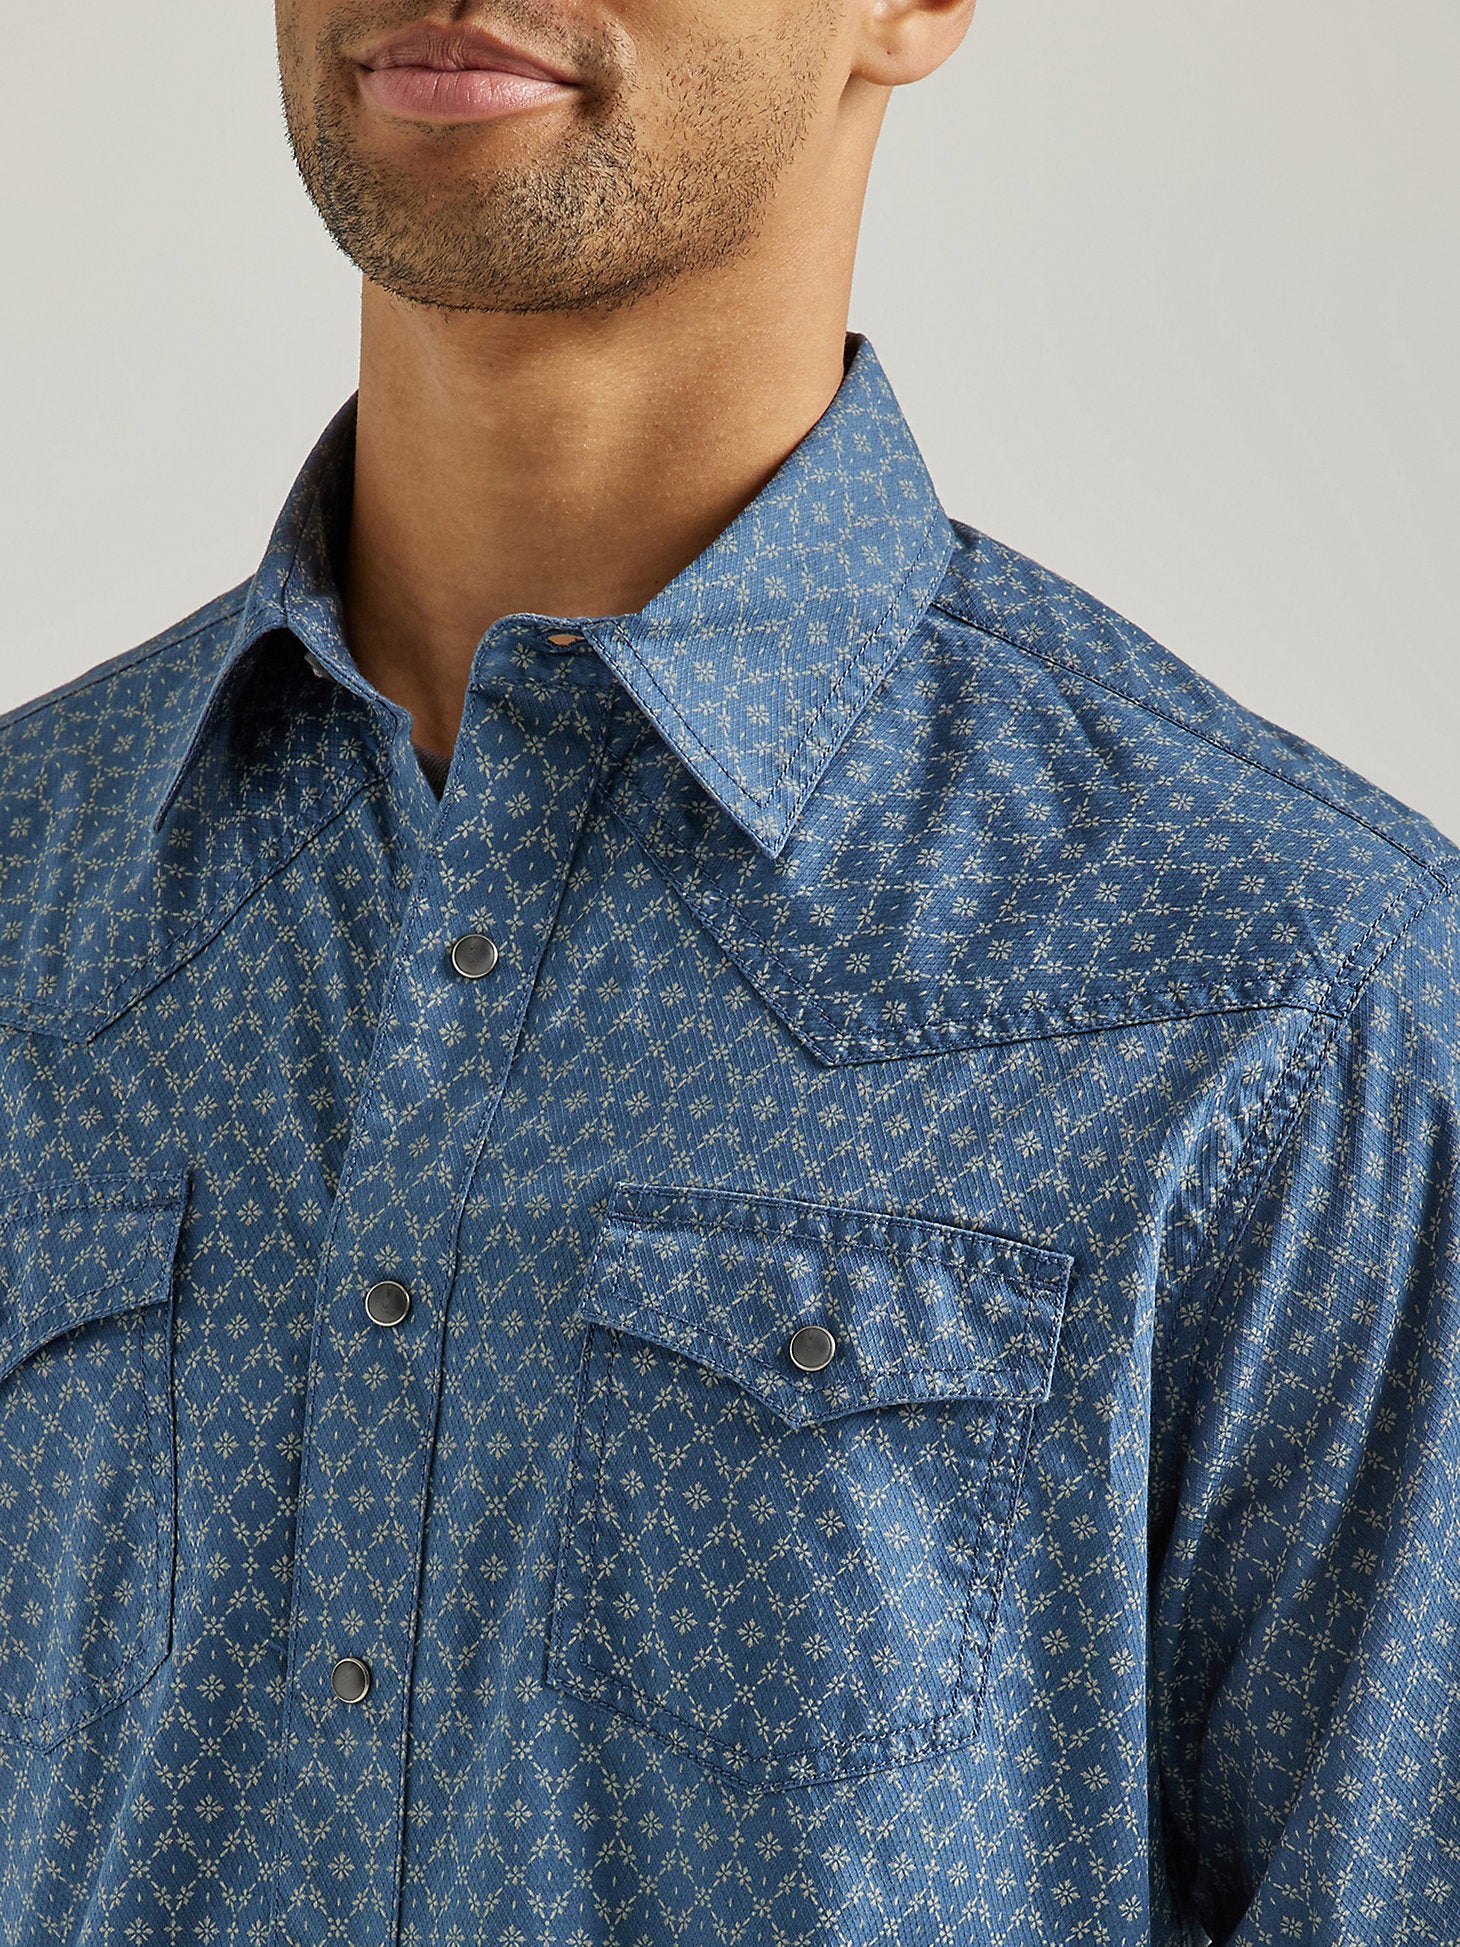 Wrangler Blue Patches Print Retro Premium Patchwork - Size Men's Snap Western Shirt 112324850 - Size M